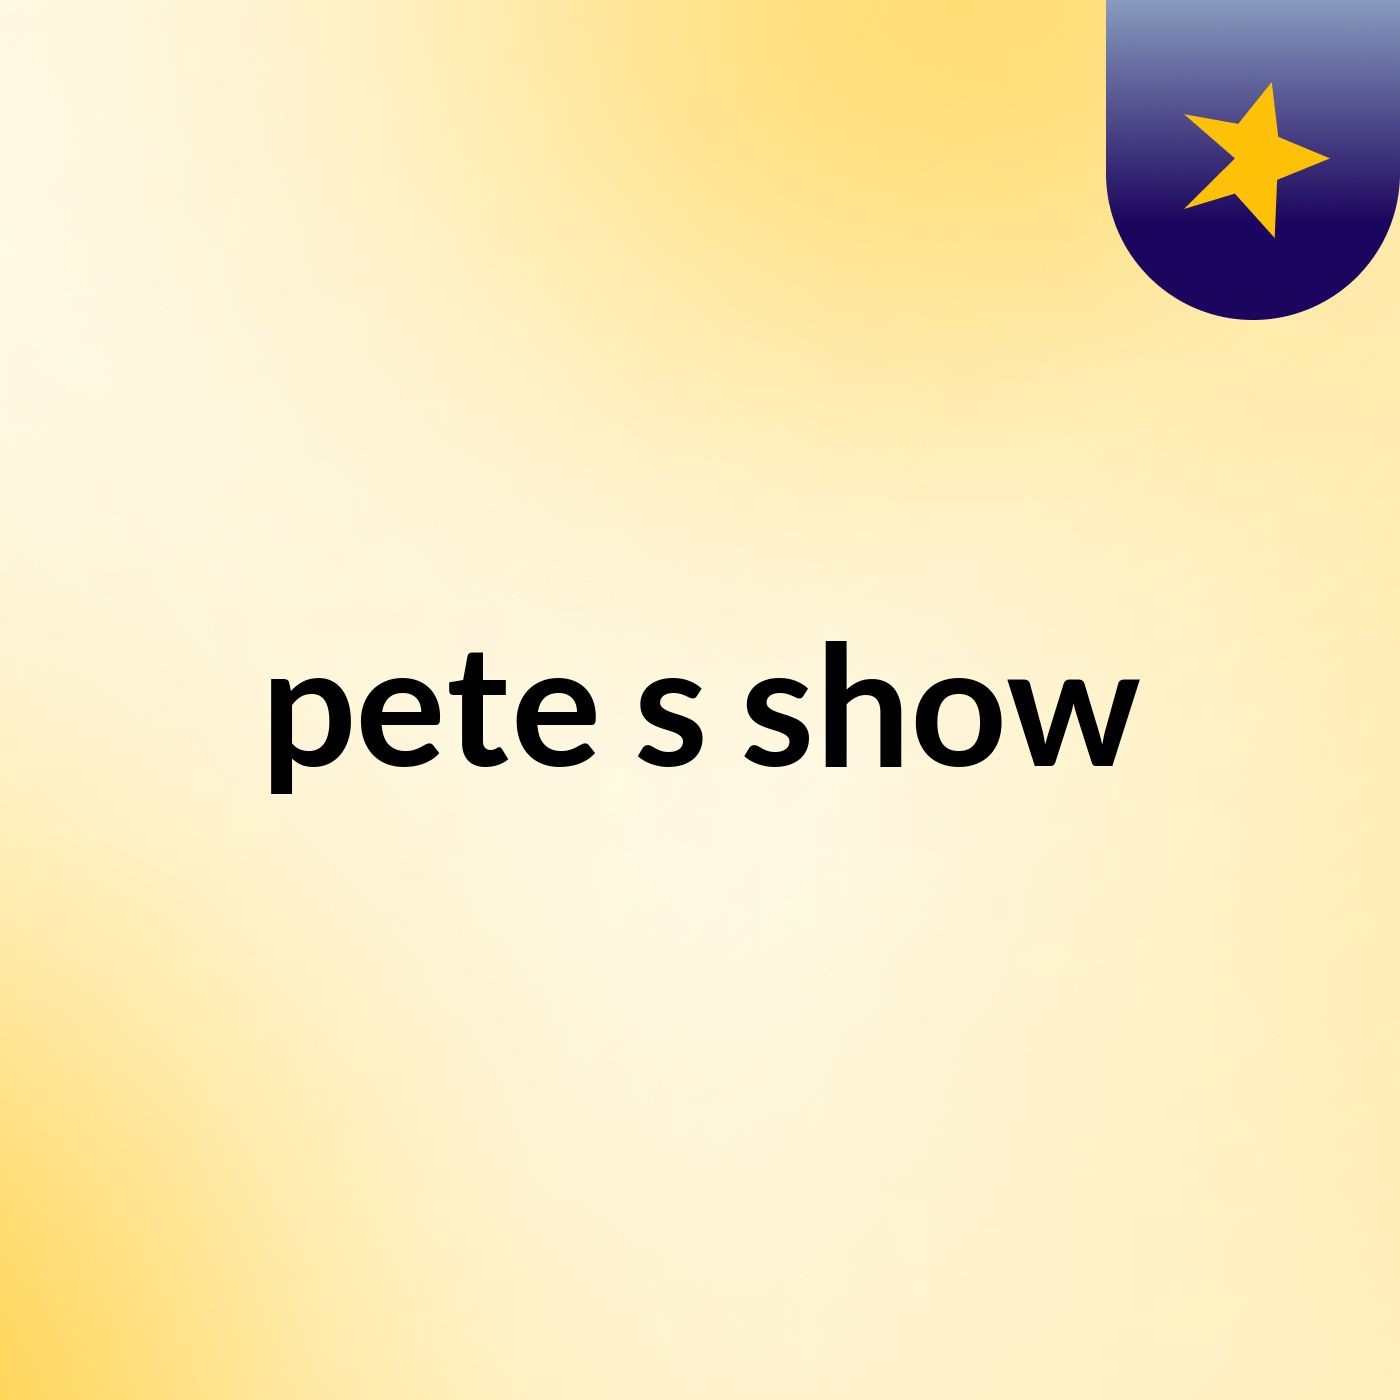 pete's show